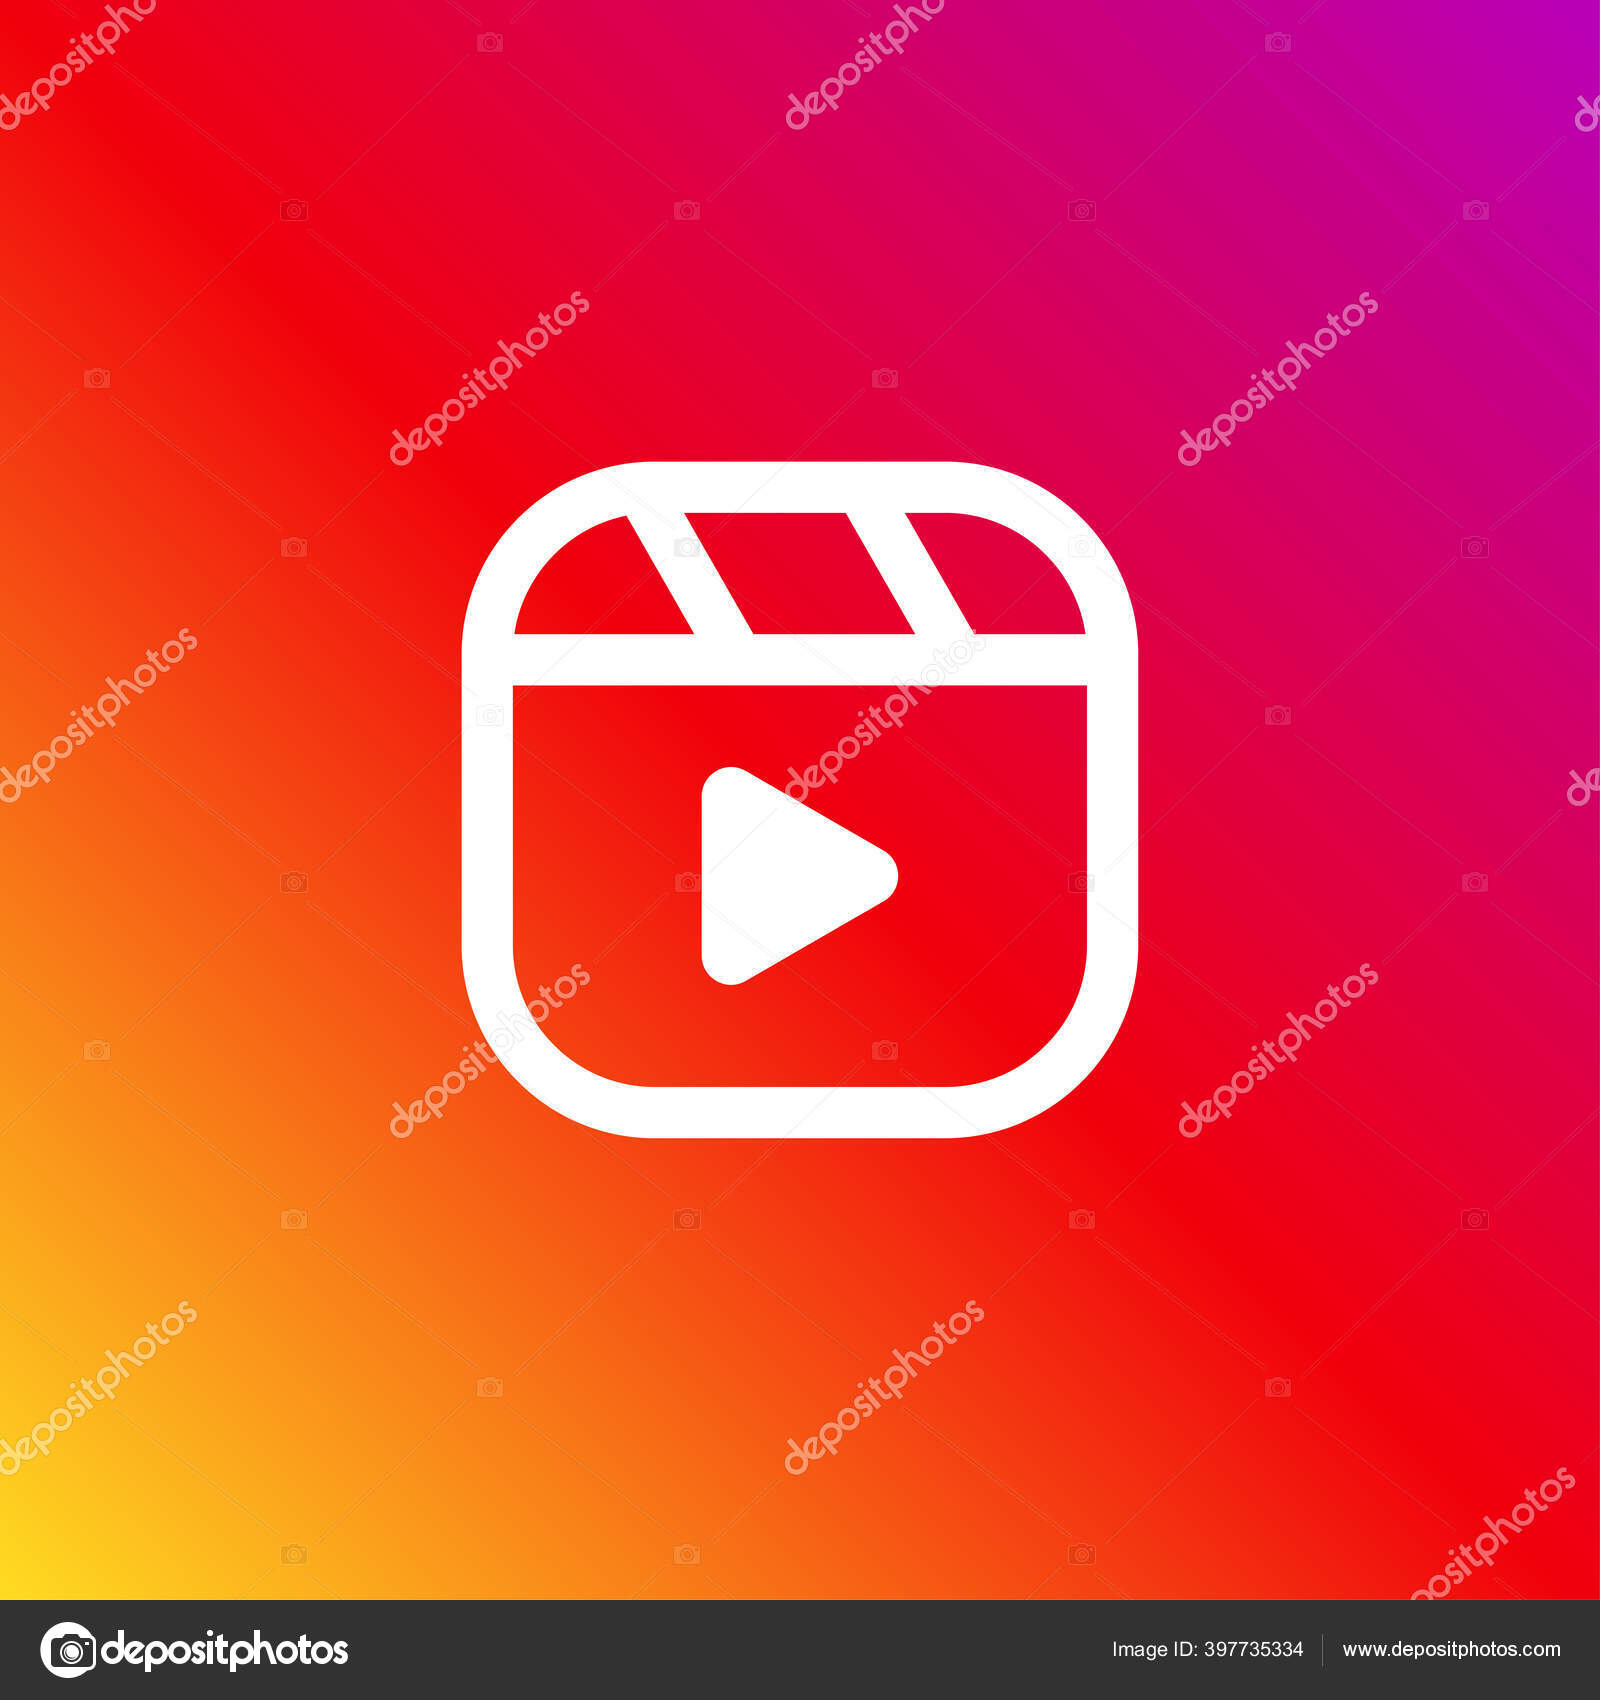 Film Reel Logo PNG Transparent Images Free Download | Vector Files | Pngtree